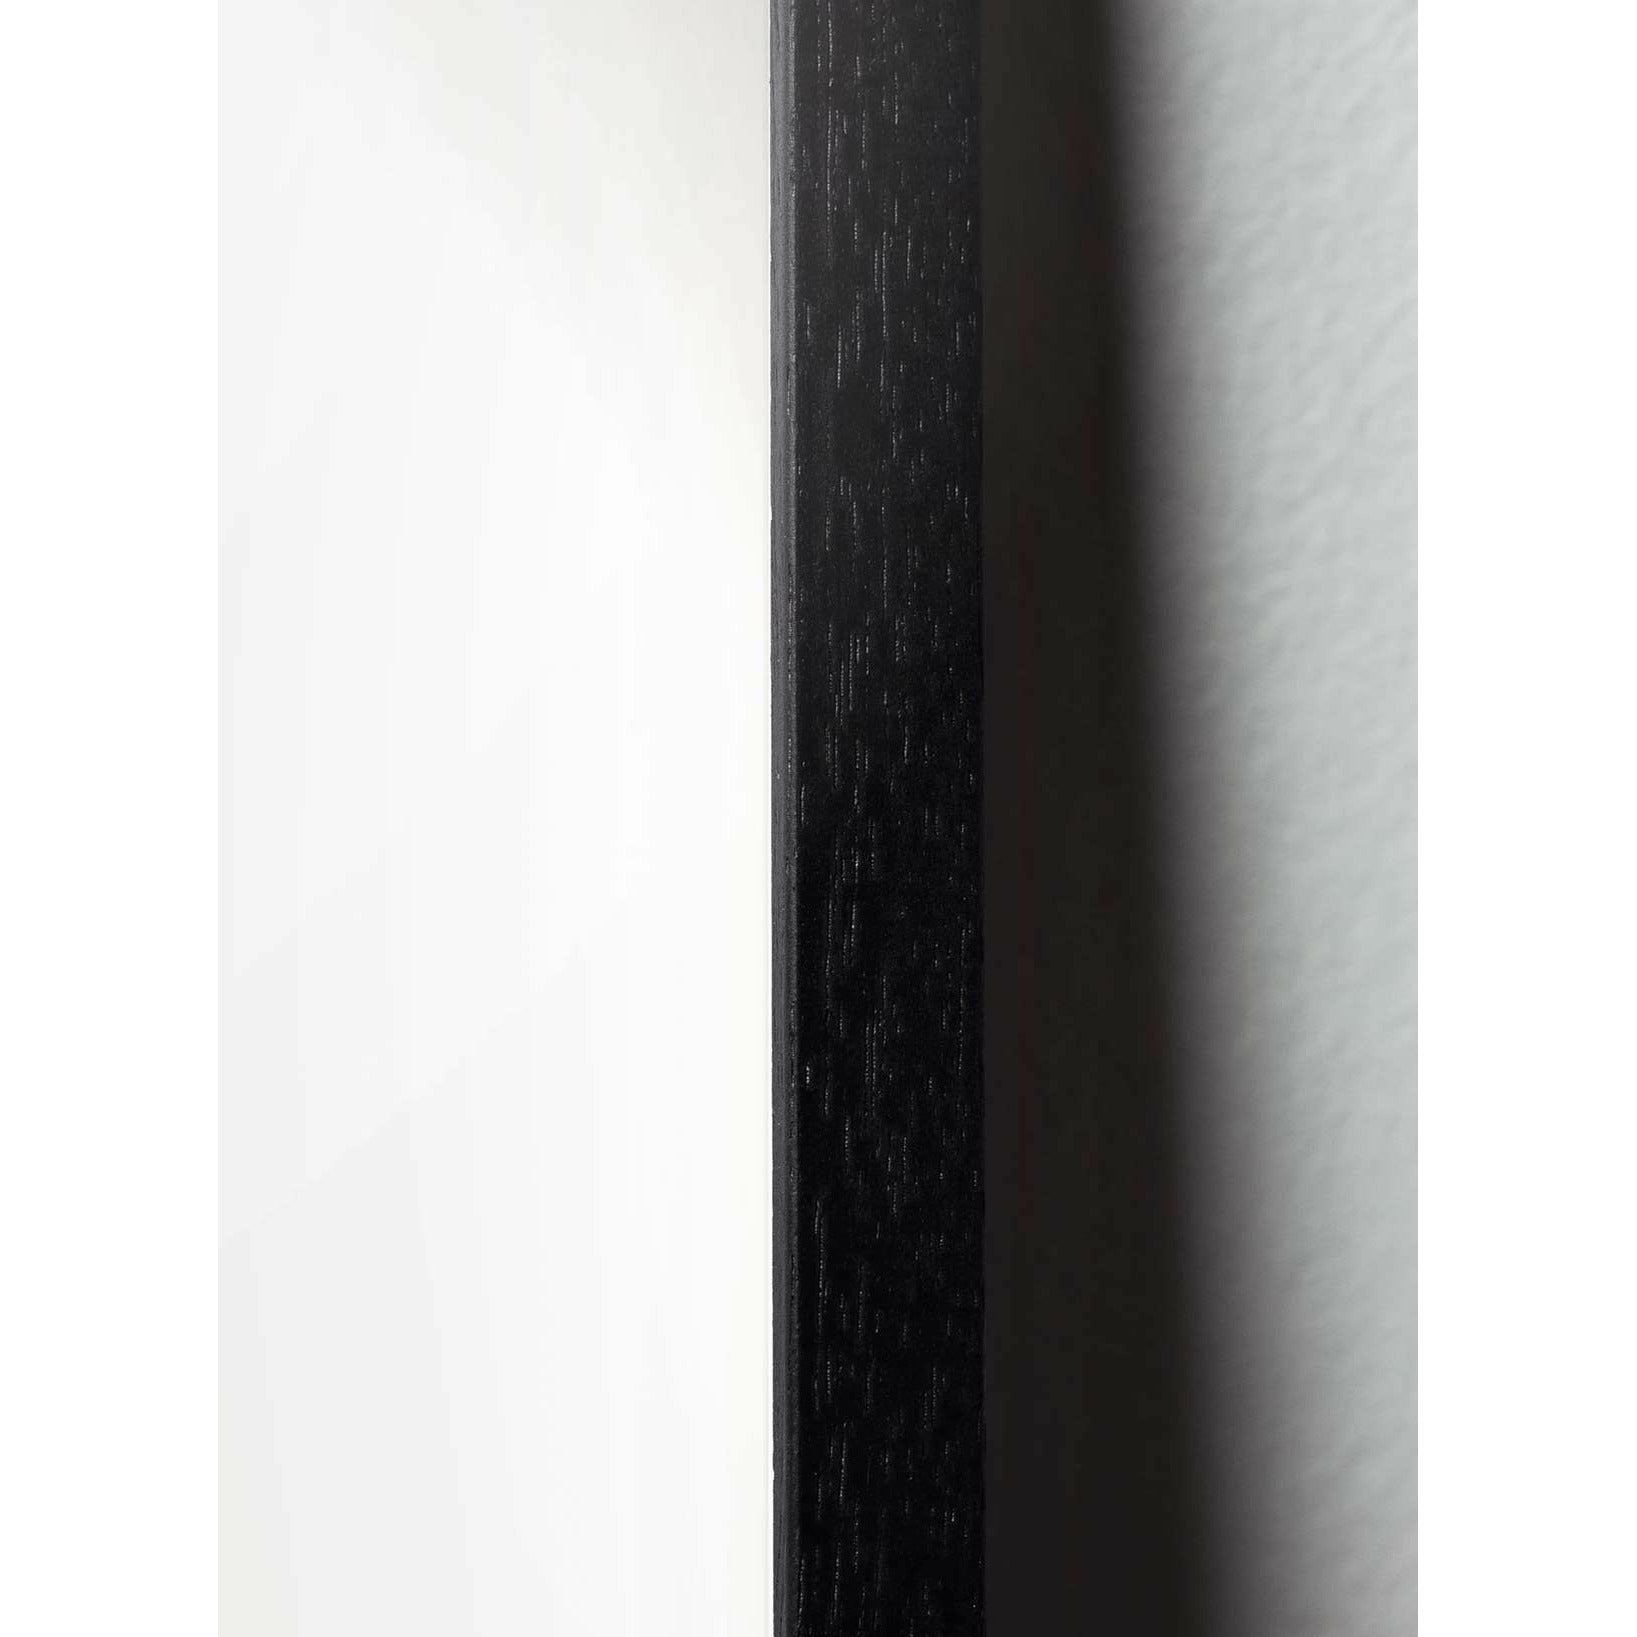 Brainchild Teddy Bear Classic juliste, runko mustalla lakattuun puuhun 70x100 cm, hiekkavärinen tausta